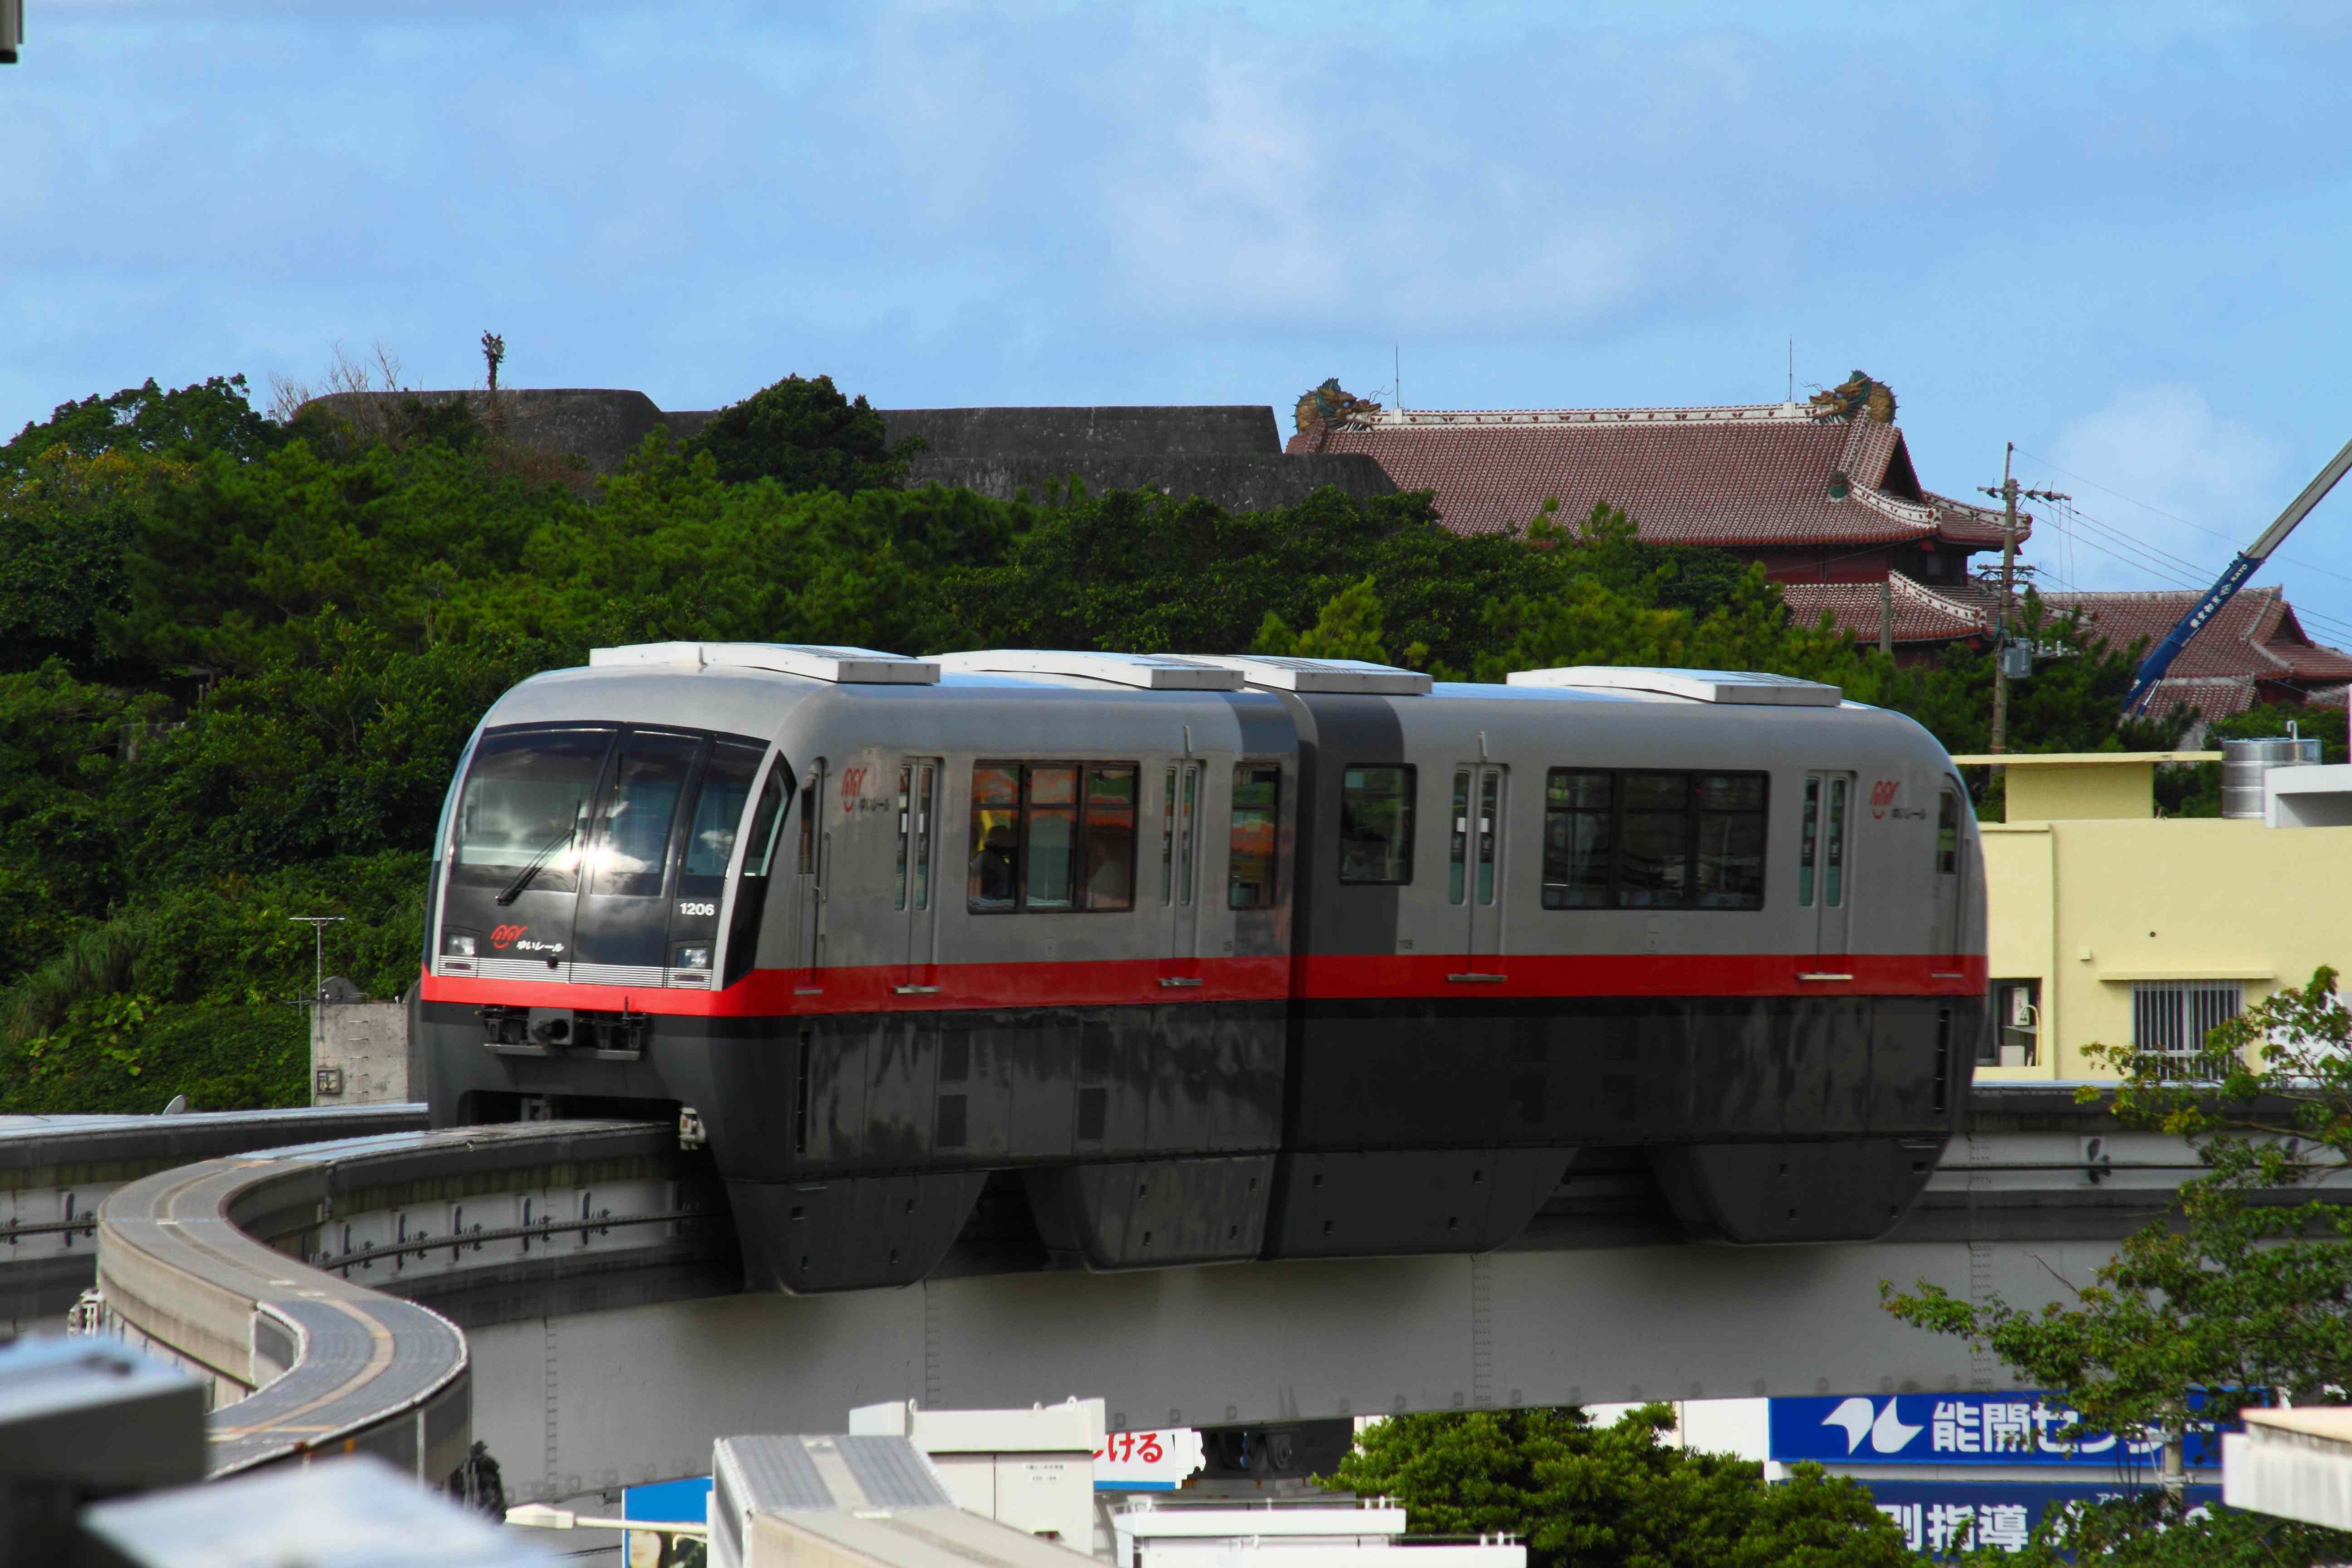 OKINAWA 1-Day Pass *Okinawa Monorail + Tokyo Bus